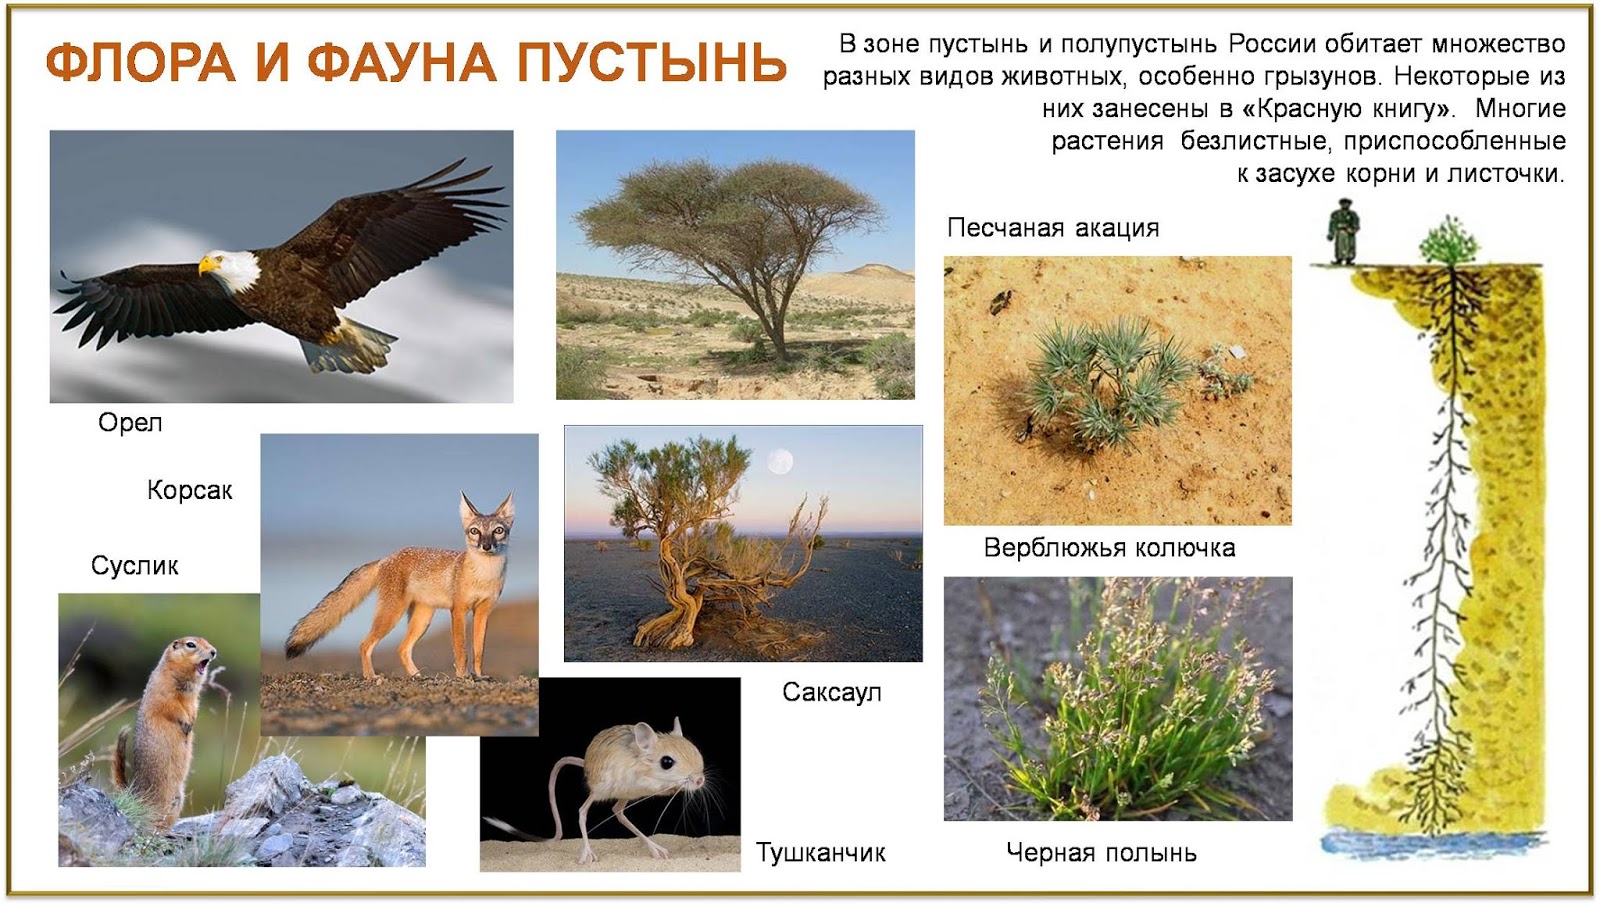 Какие животные и растения обитают в пустыне. Фауна пустынь и полупустынь в России. Зона полупустынь и пустынь растительный и животный мир.